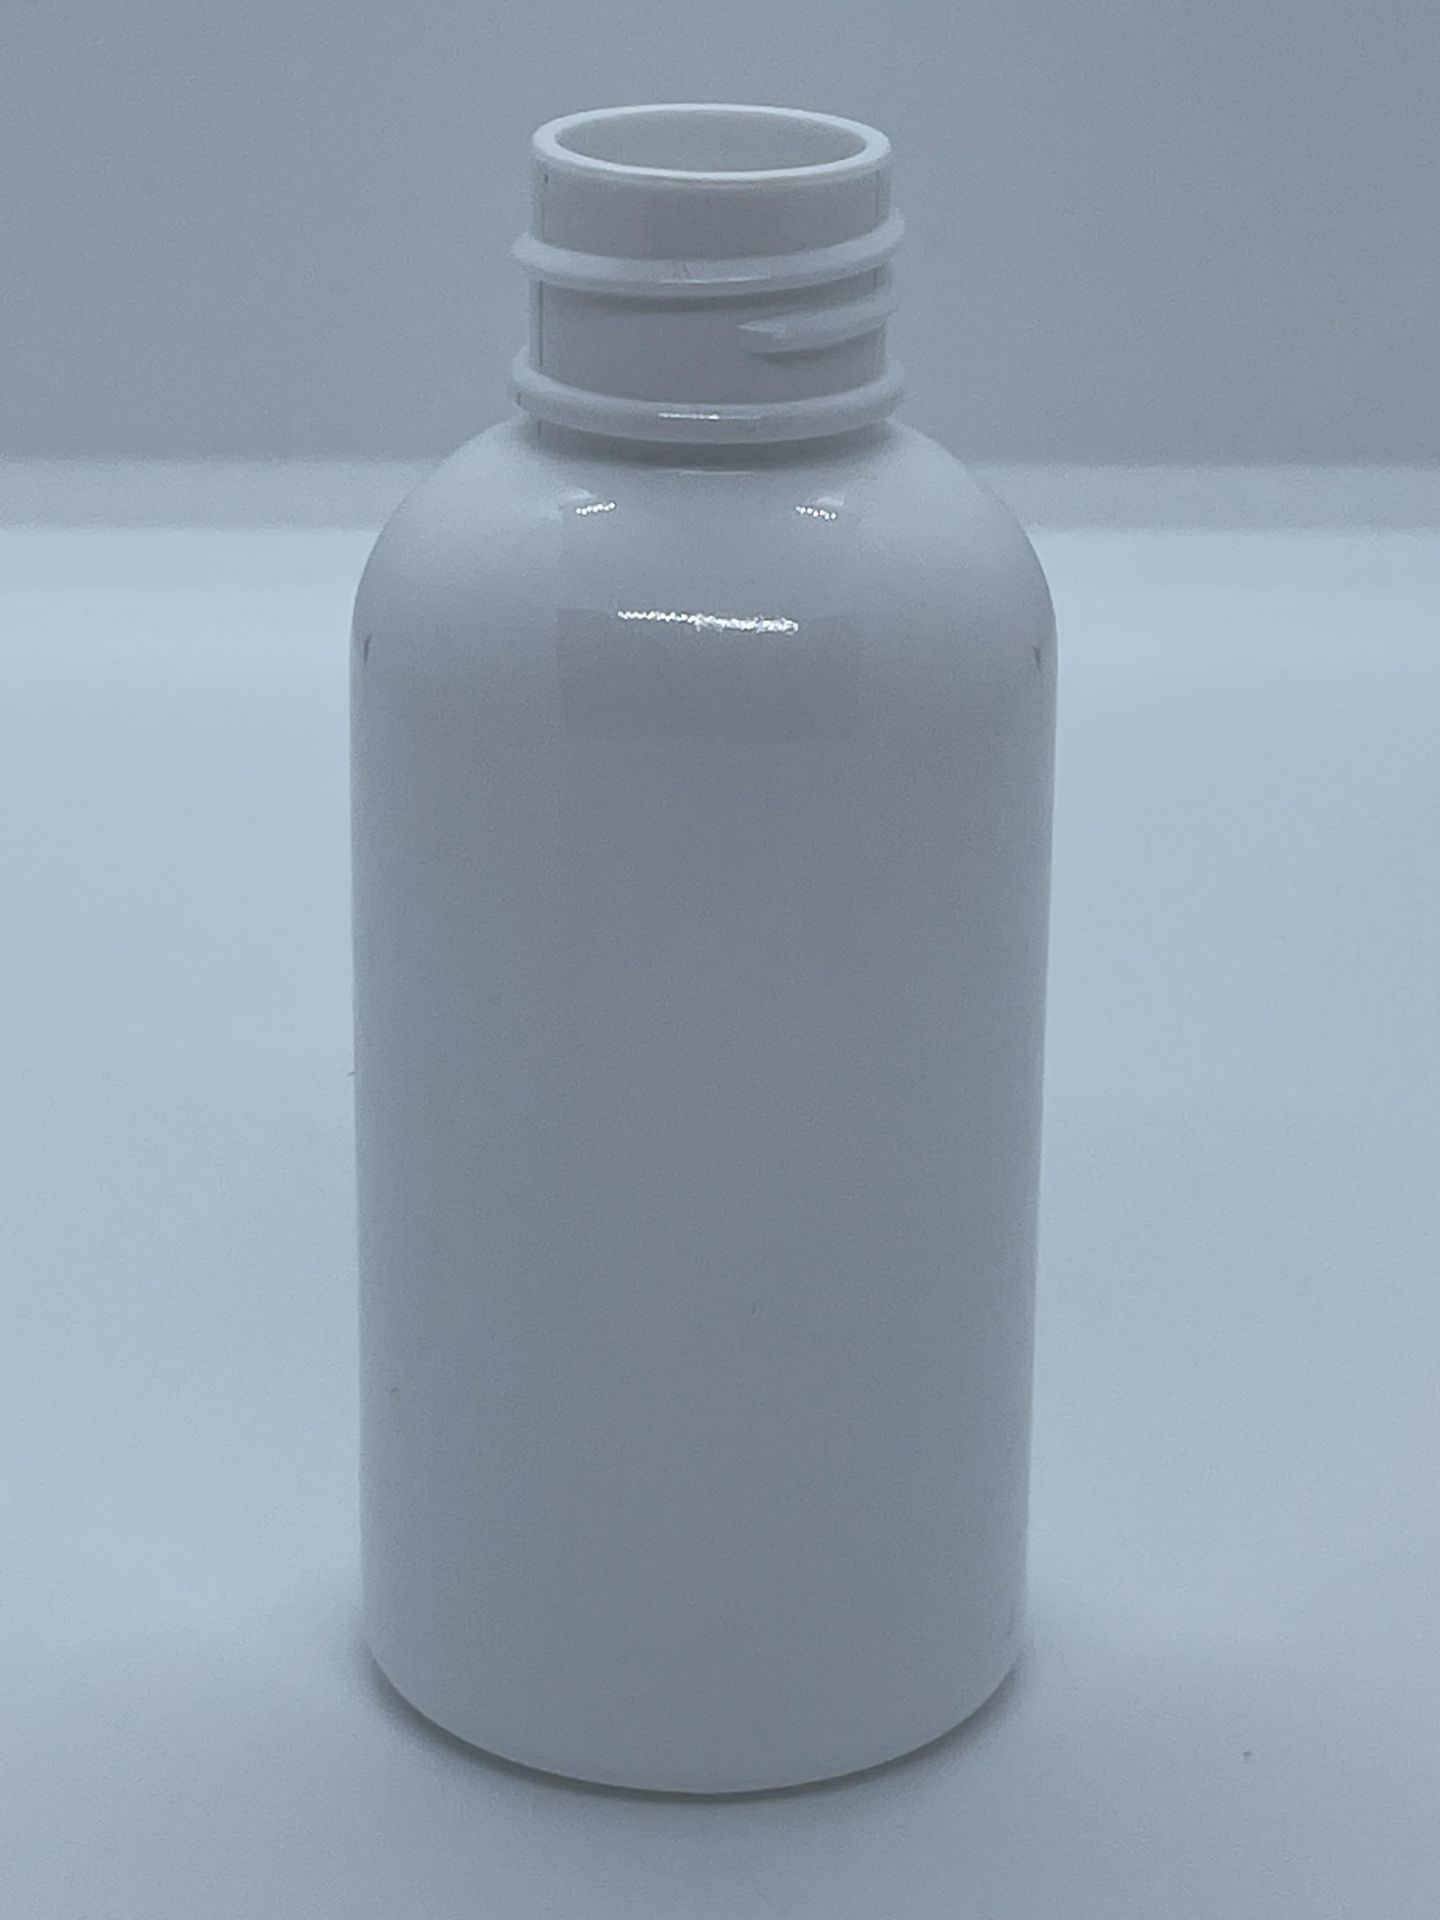 32,000 - White Plastic Bullet 2 oz Empty Bottles, 20-410 Threading Neck, 3.25" Tall, 1.25" Diameter - Image 7 of 8